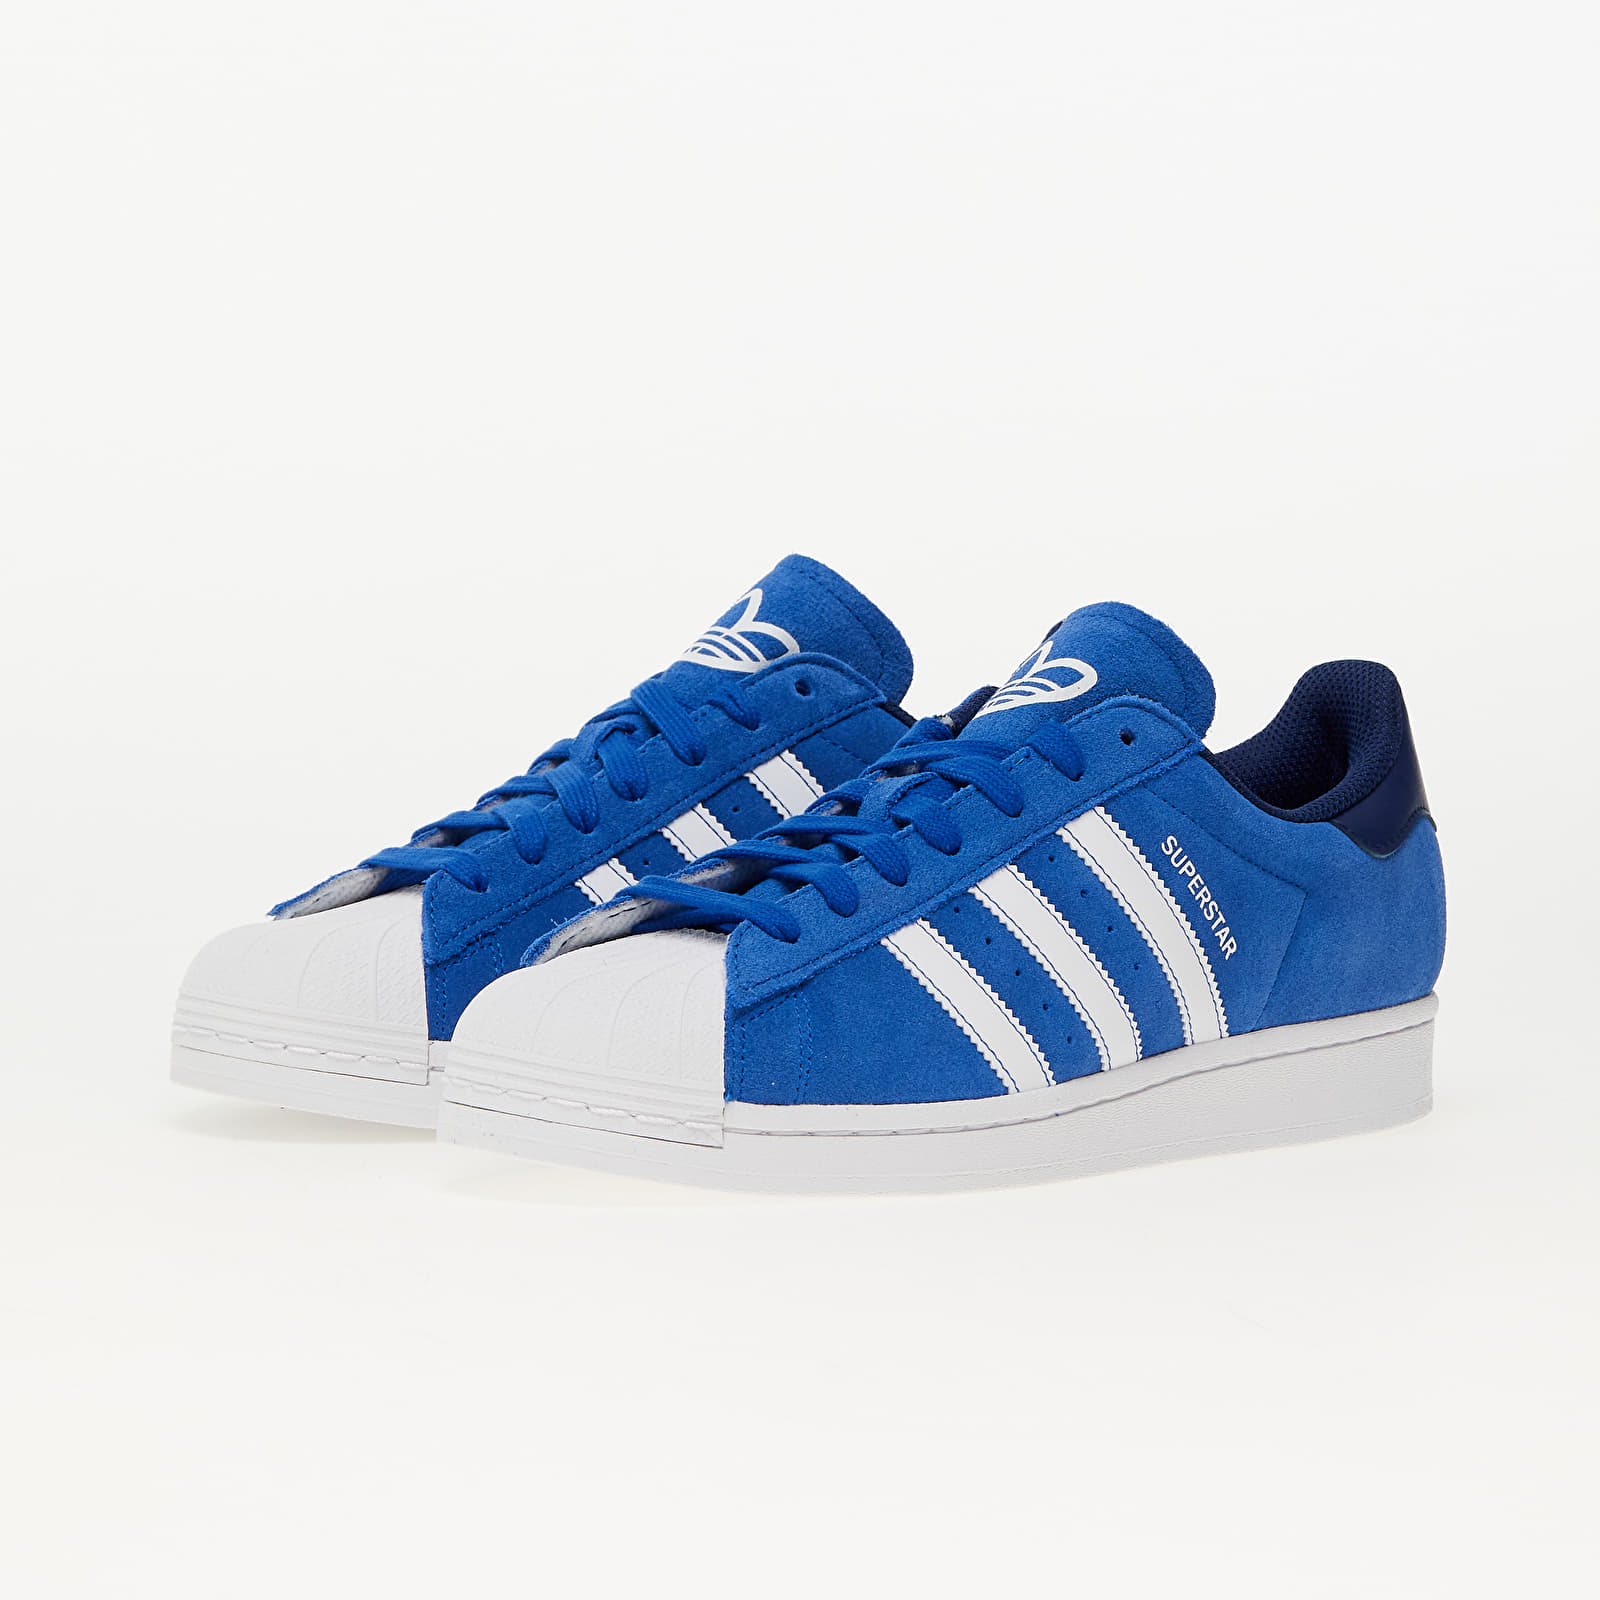 Chaussures et baskets homme adidas Superstar Royal Blue/ Ftw White/ Dark  Blue | Footshop